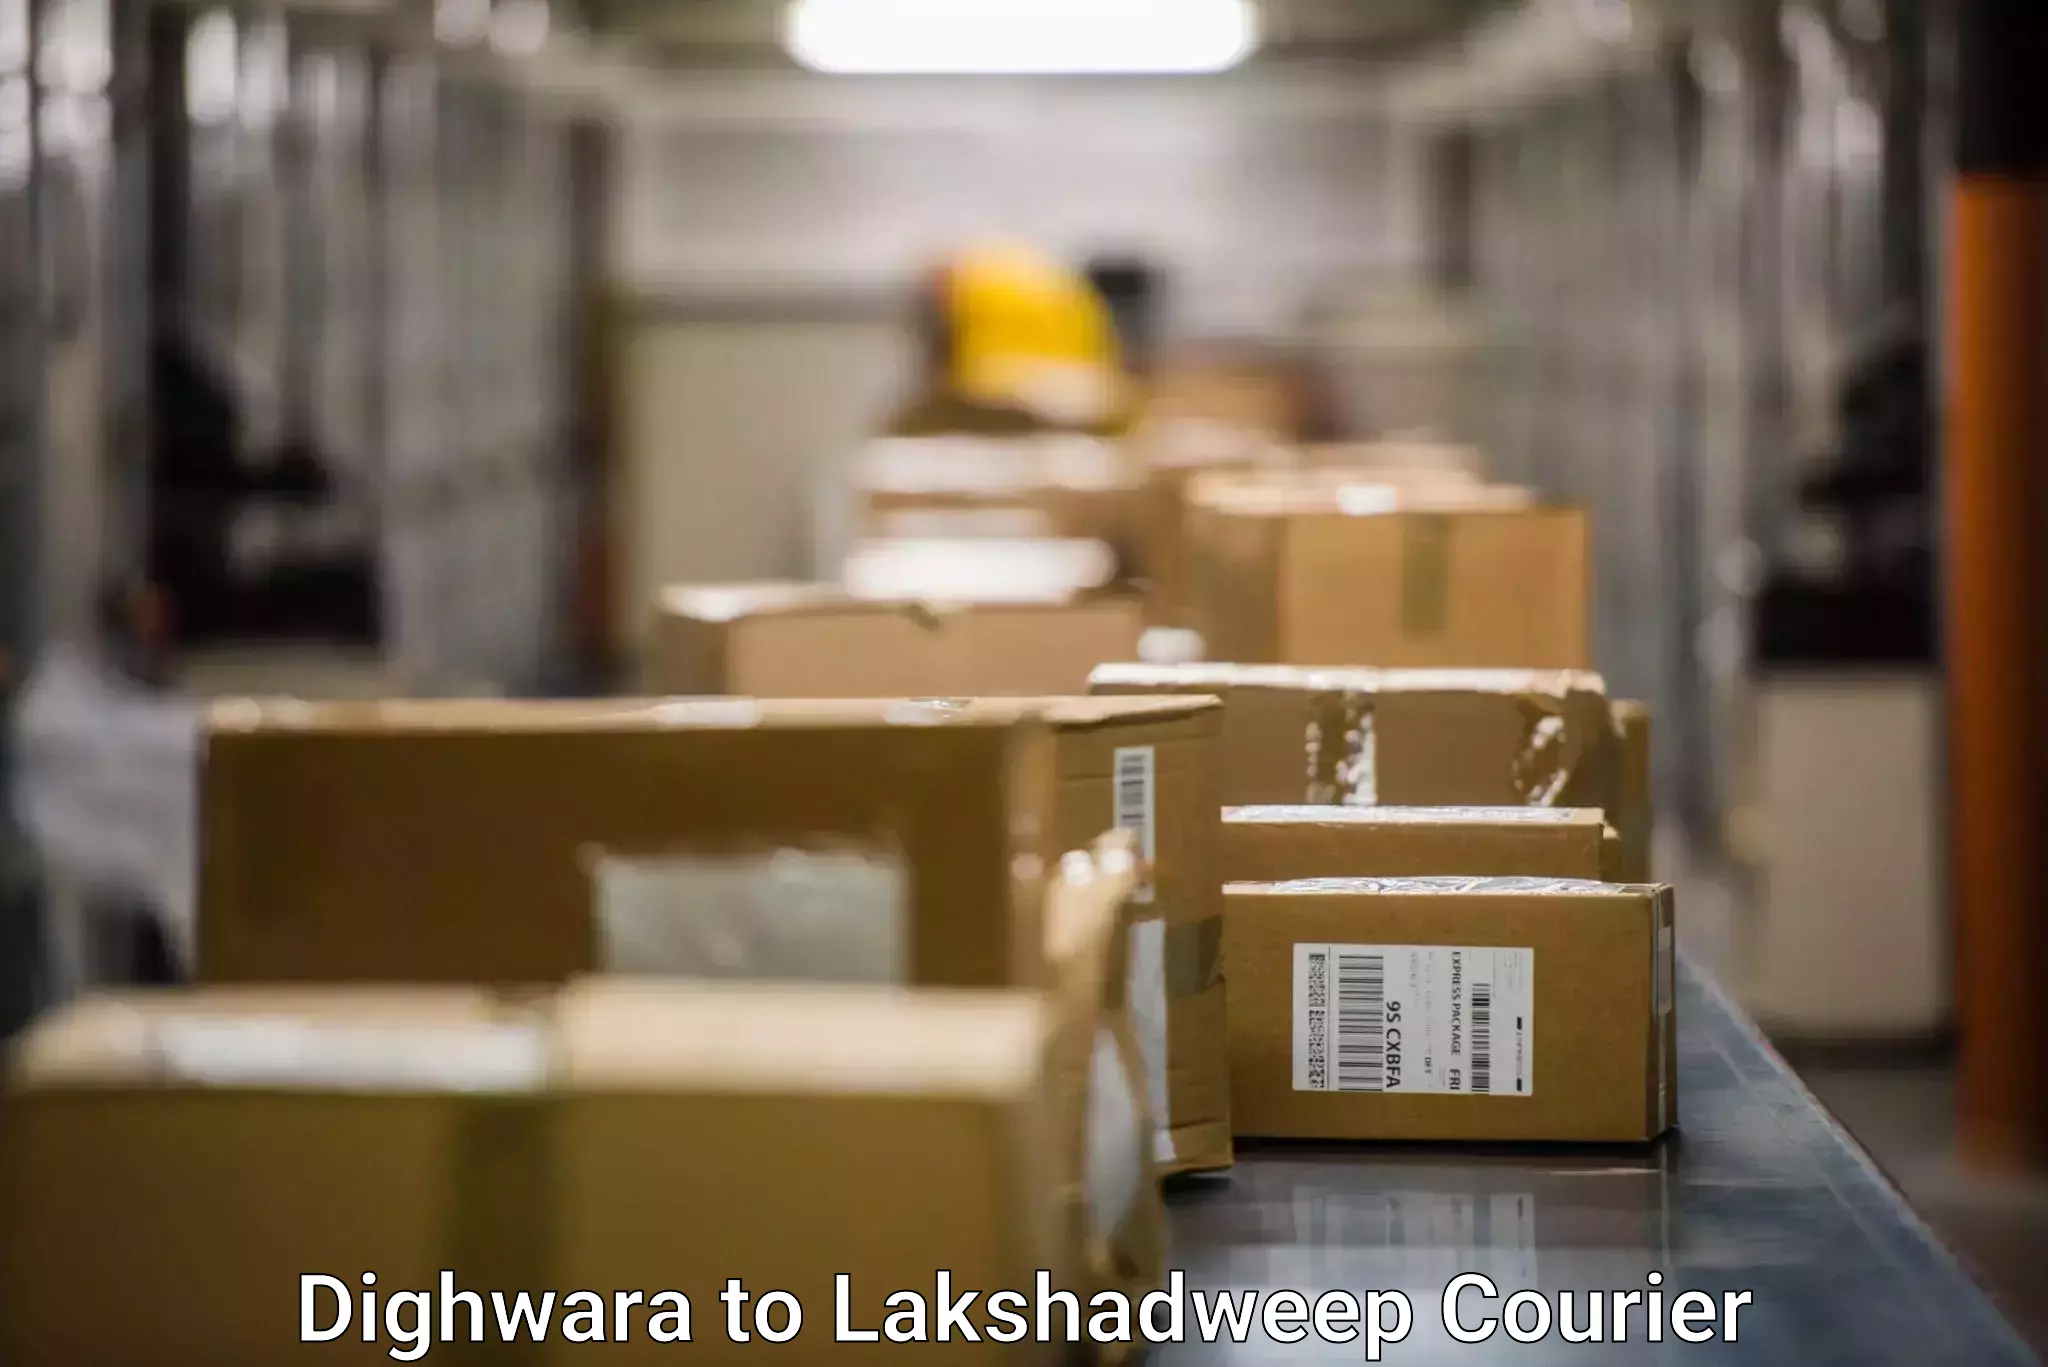 High-performance logistics in Dighwara to Lakshadweep